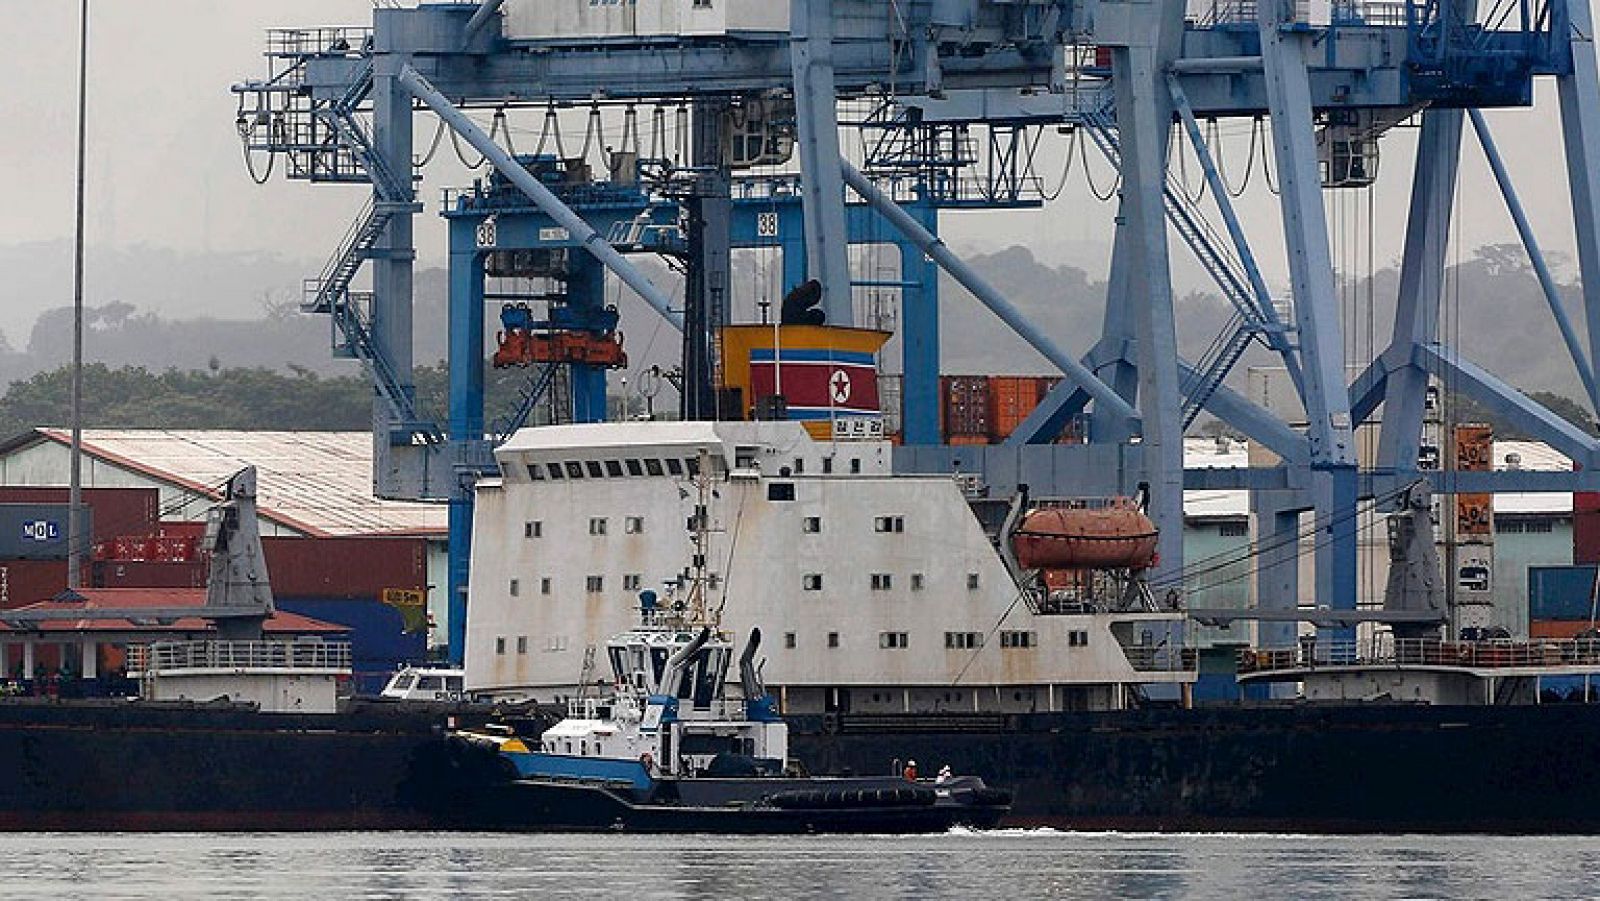  Las autoridades panameñas han retenido un barco de bandera norcoreana con "armas de guerra" ocultas en un cargamento de azúcar procedente de Cuba, según ha anunciado el presidente del país, Ricardo Martinelli. EE.UU. ha ofrecido cooperación al gobierno panameño en las labores de inspección del barco norcoreano 